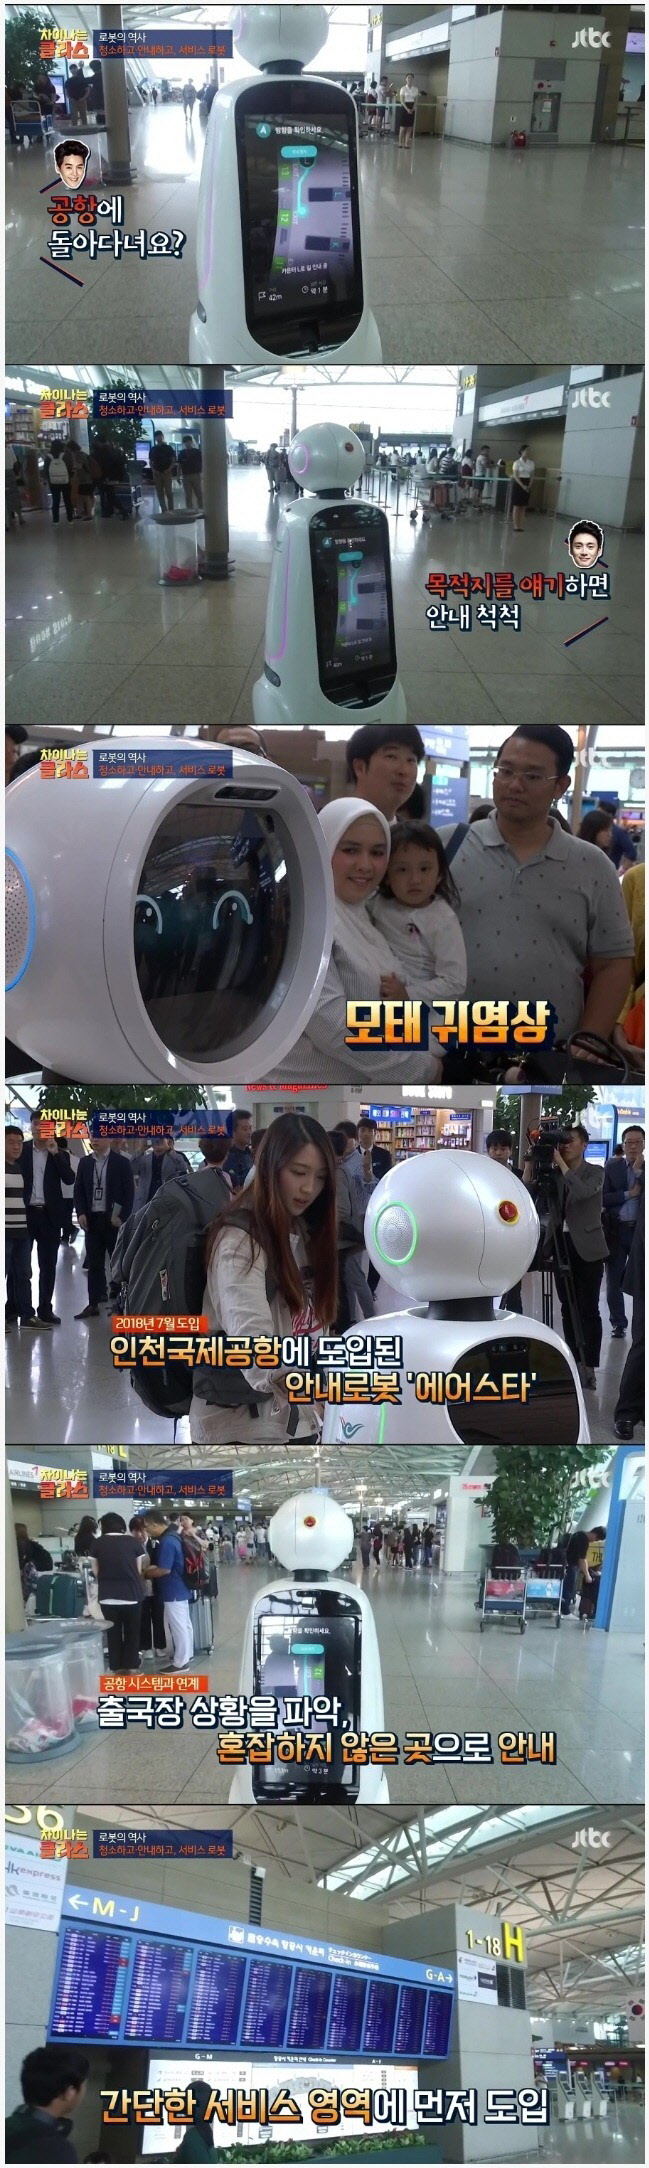 인천공항 안내 로봇